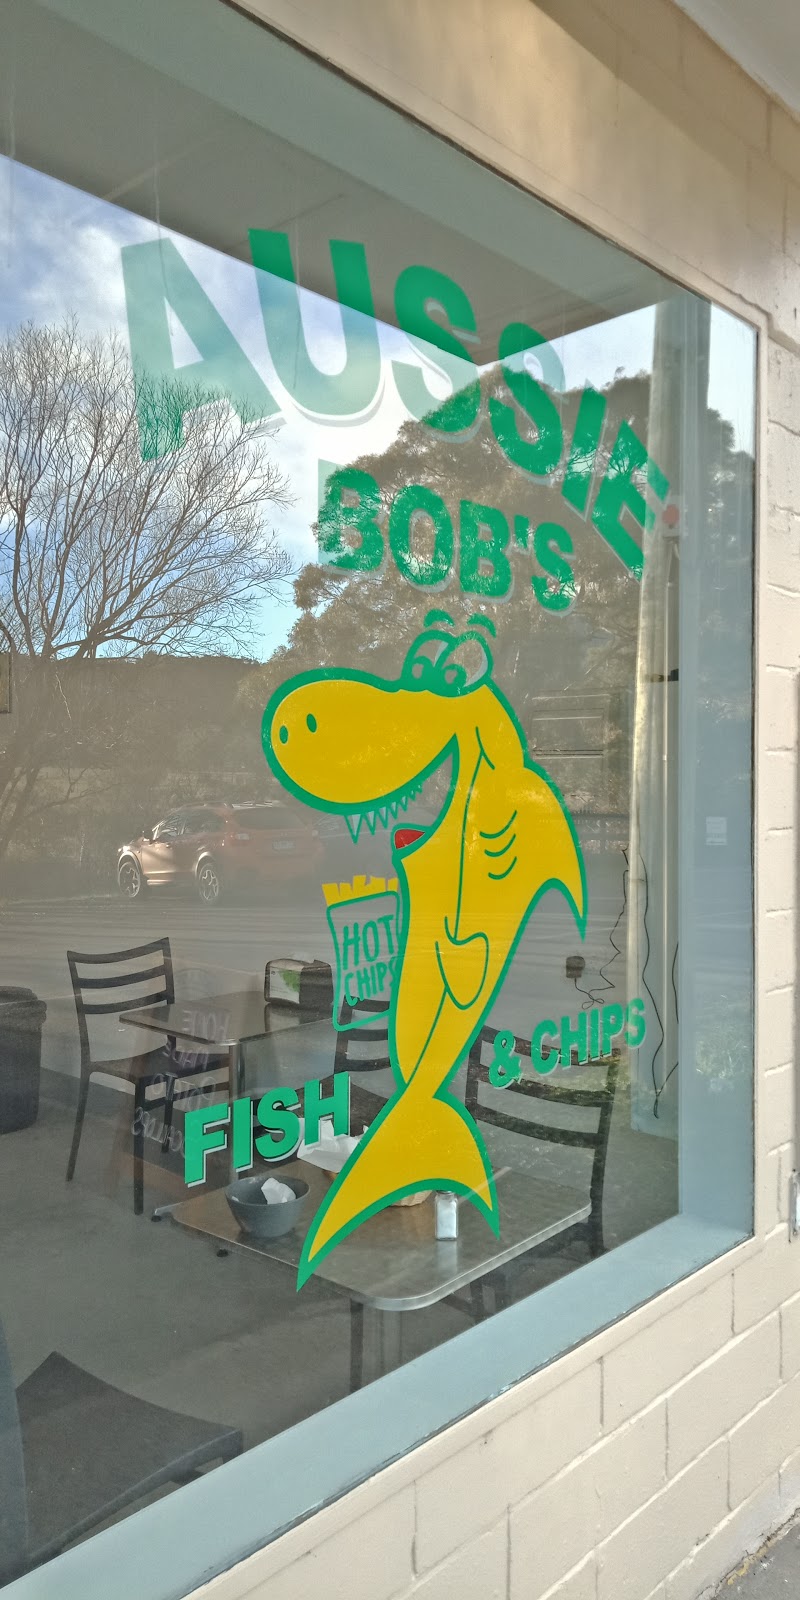 Aussie Bobs Fish & Chips | restaurant | 1649 Gordon River Rd, Westerway TAS 7140, Australia